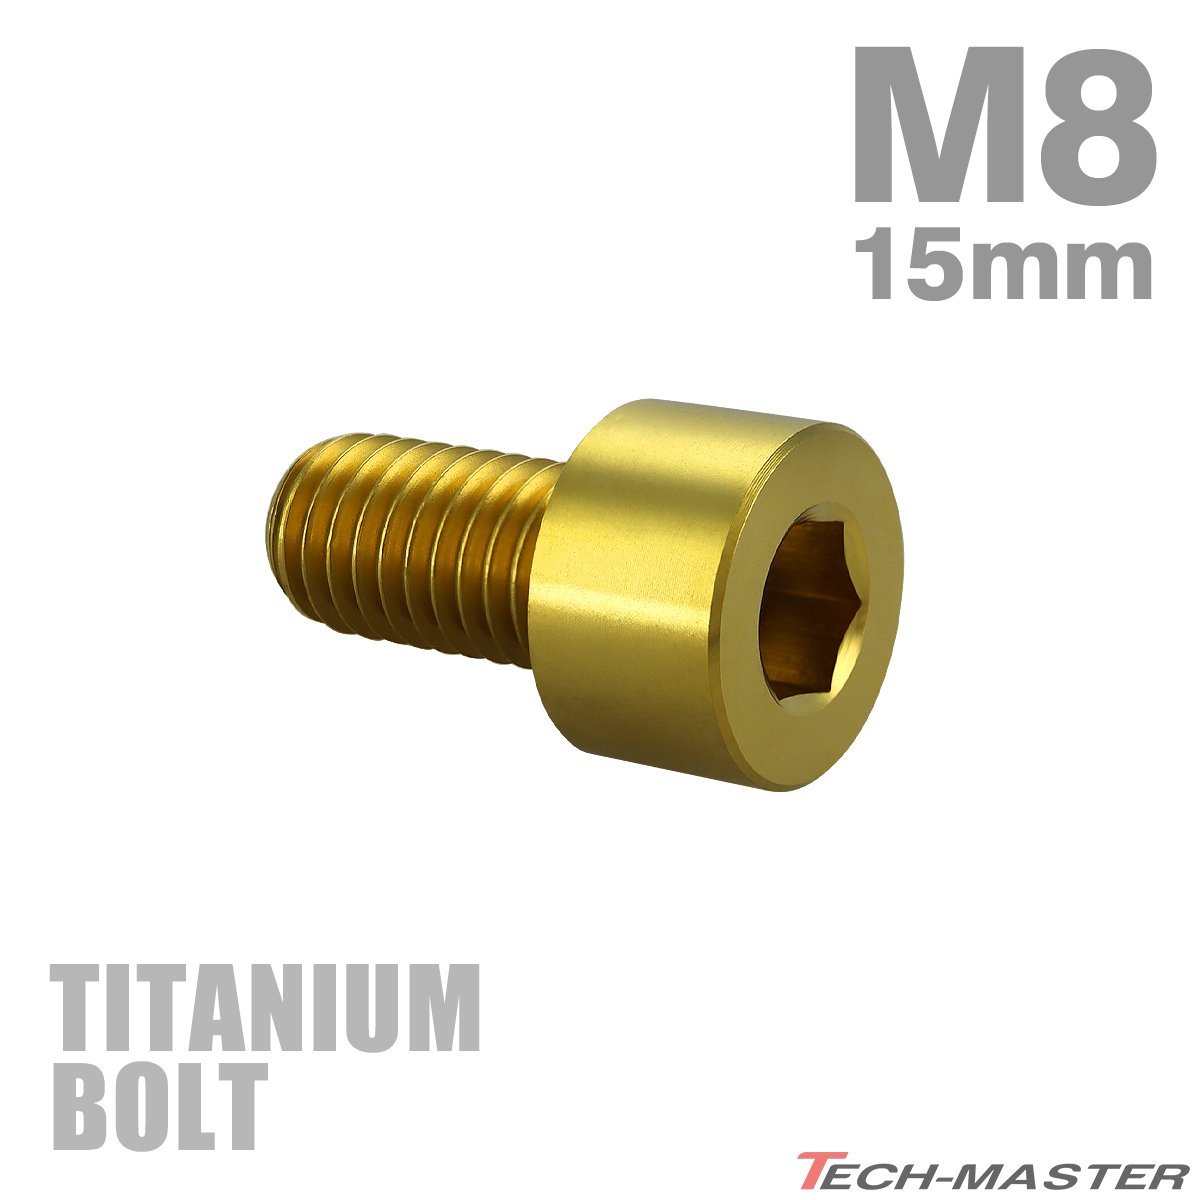 M8×15mm P1.25 64チタン合金 スリムヘッド キャップボルト 六角穴付き ゴールド 1個 JA1995_画像1